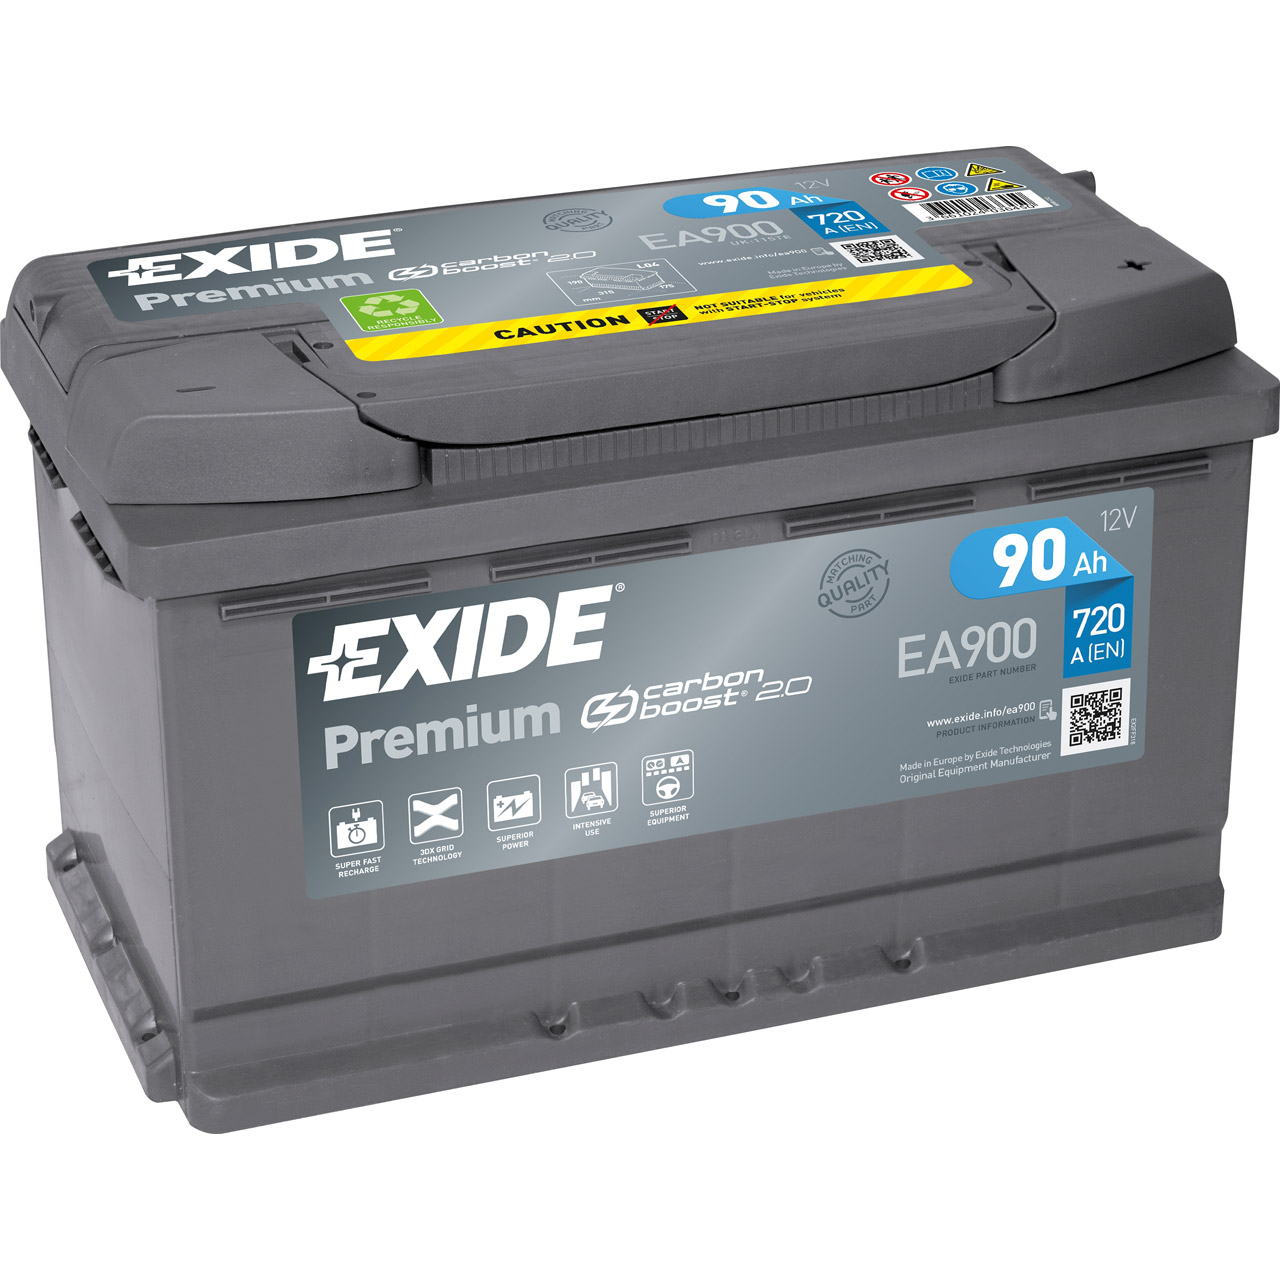 EXIDE EA900 PREMIUM Autobatterie Batterie Starterbatterie 12V 90Ah EN720A